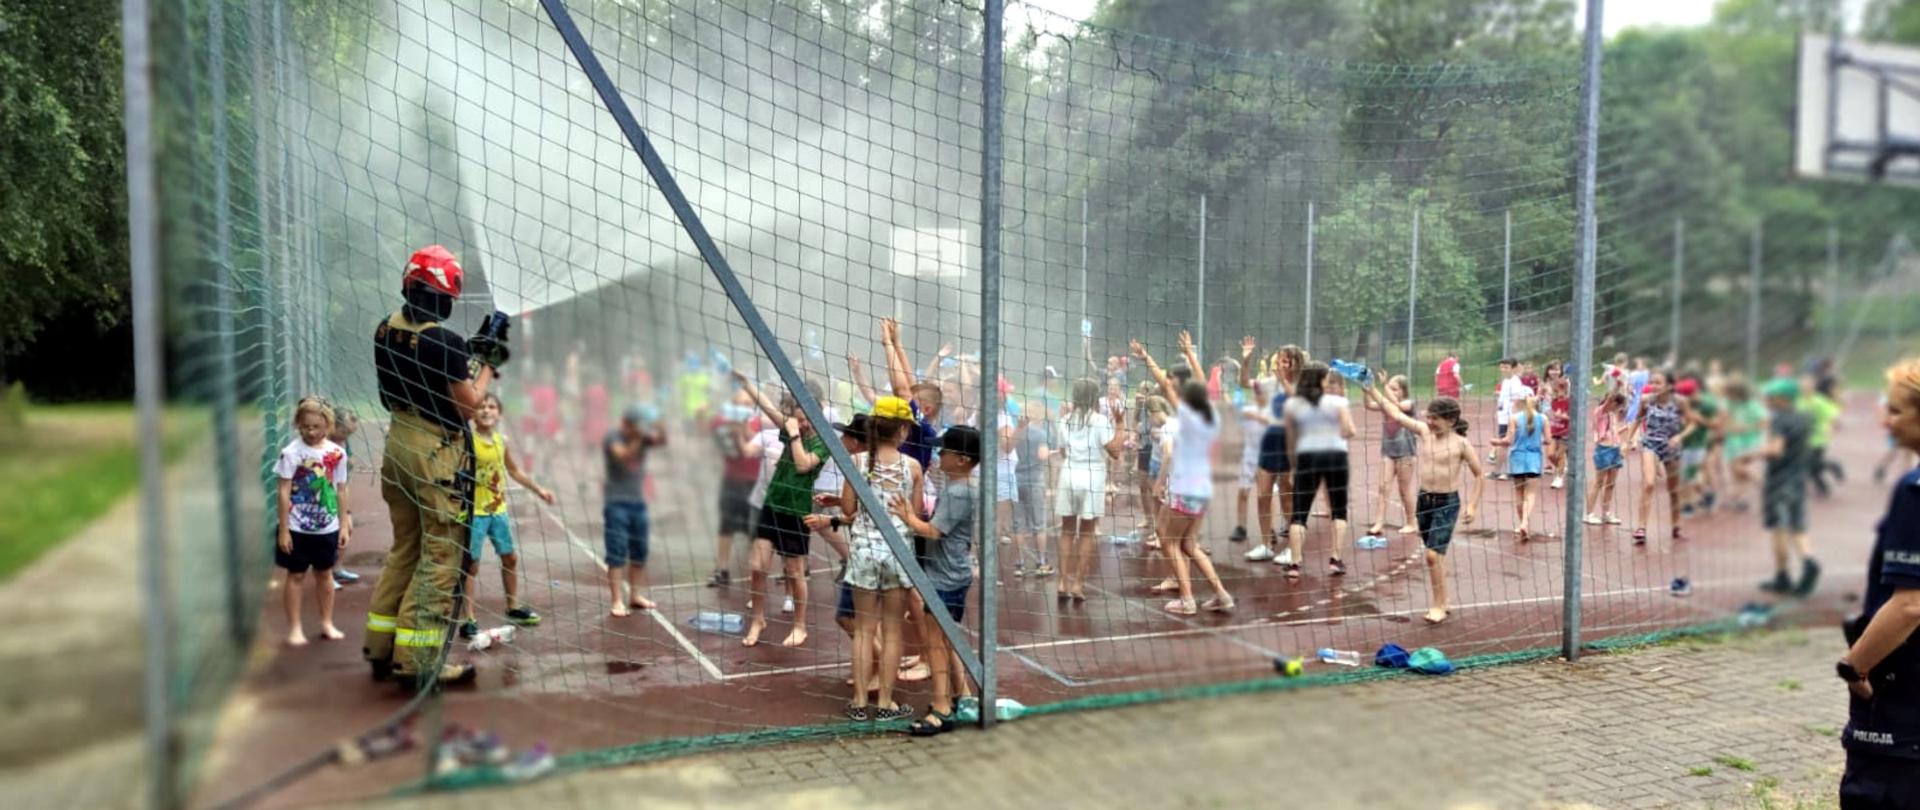 Zdjęcie przedstawia grupę dzieci na boisku szkolnym, które są polewane woda przez strażaka.